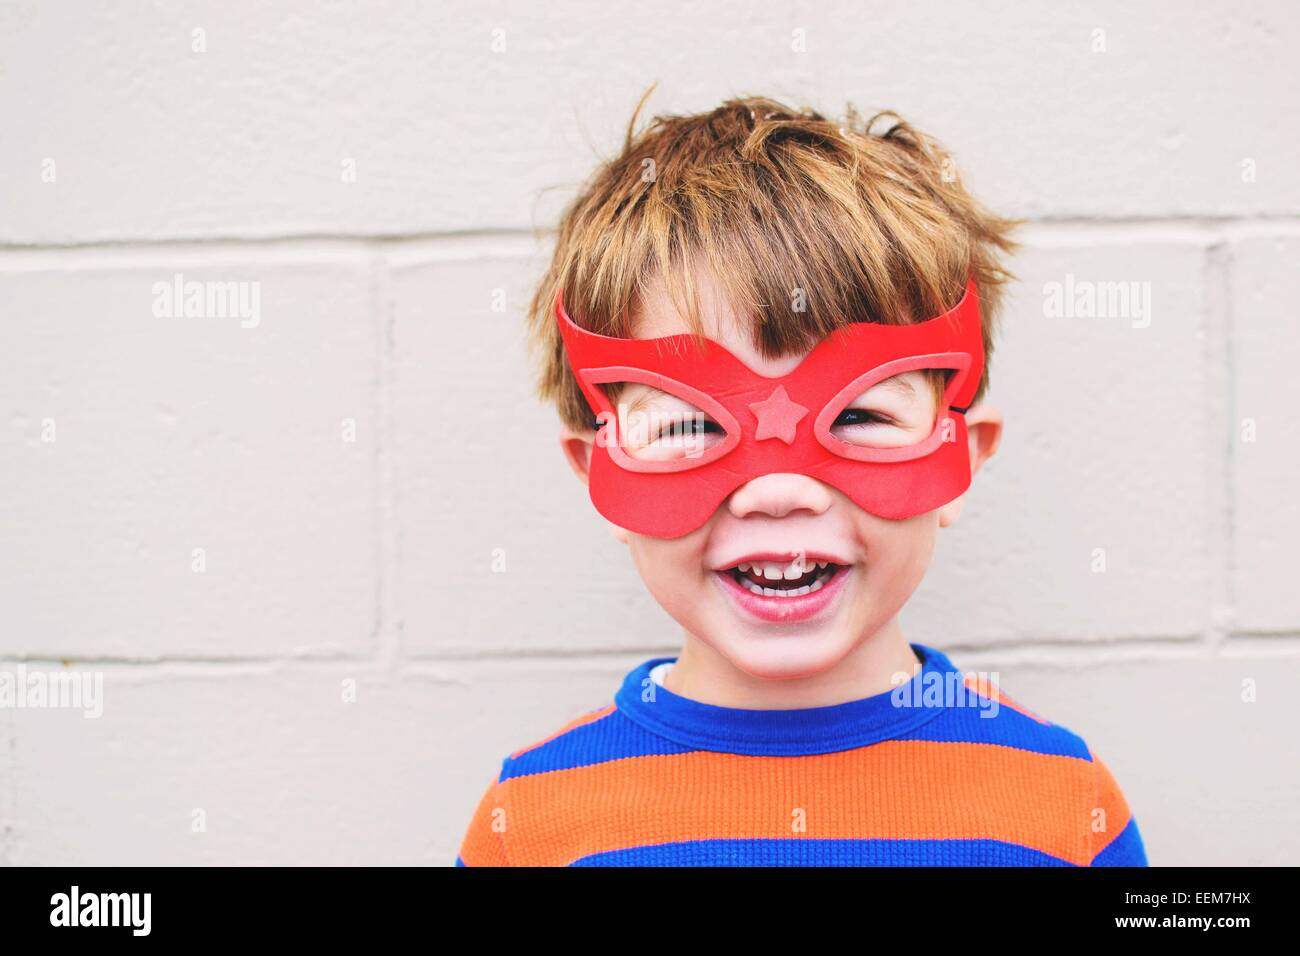 Ritratto di un ragazzo sorridente che indossa una maschera super eroe Foto Stock